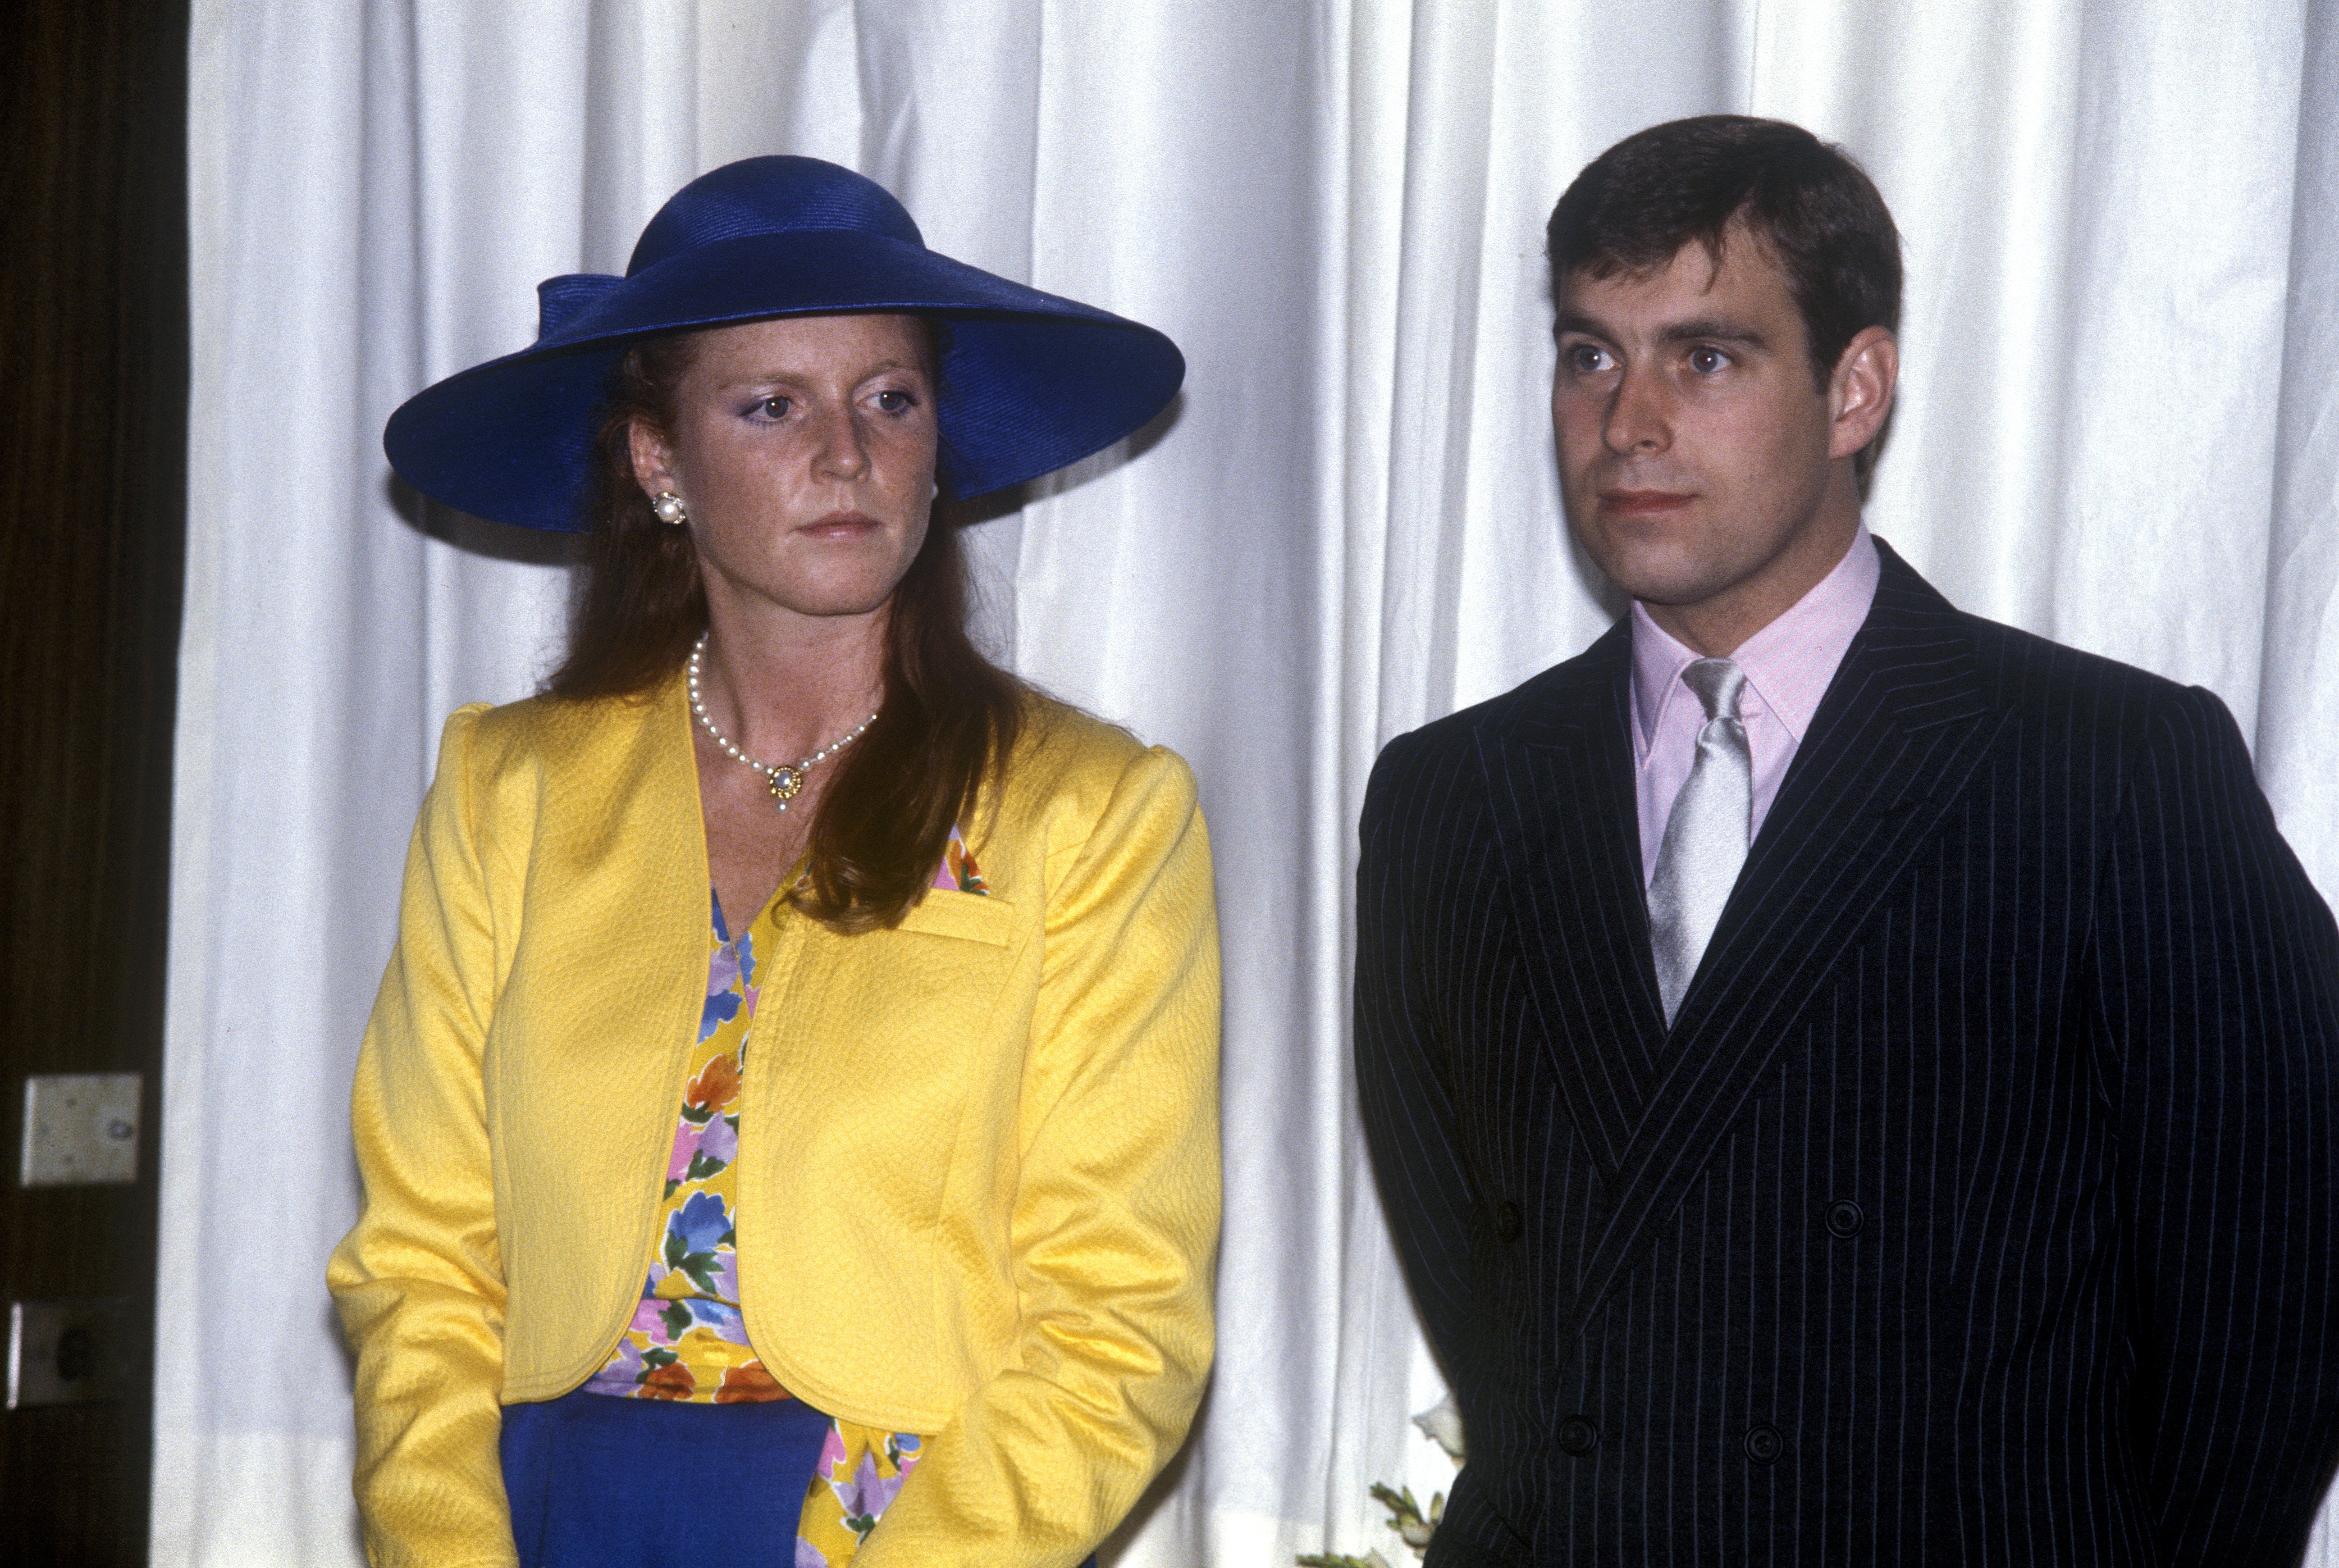 Sarah, Duchesse d'York avec le Prince Andrew, Duc d'York, regardant un défilé de mode à l'hôtel Royal York dans l'Ontario, Canada, le 17 juillet 1987. | Source : Getty Images